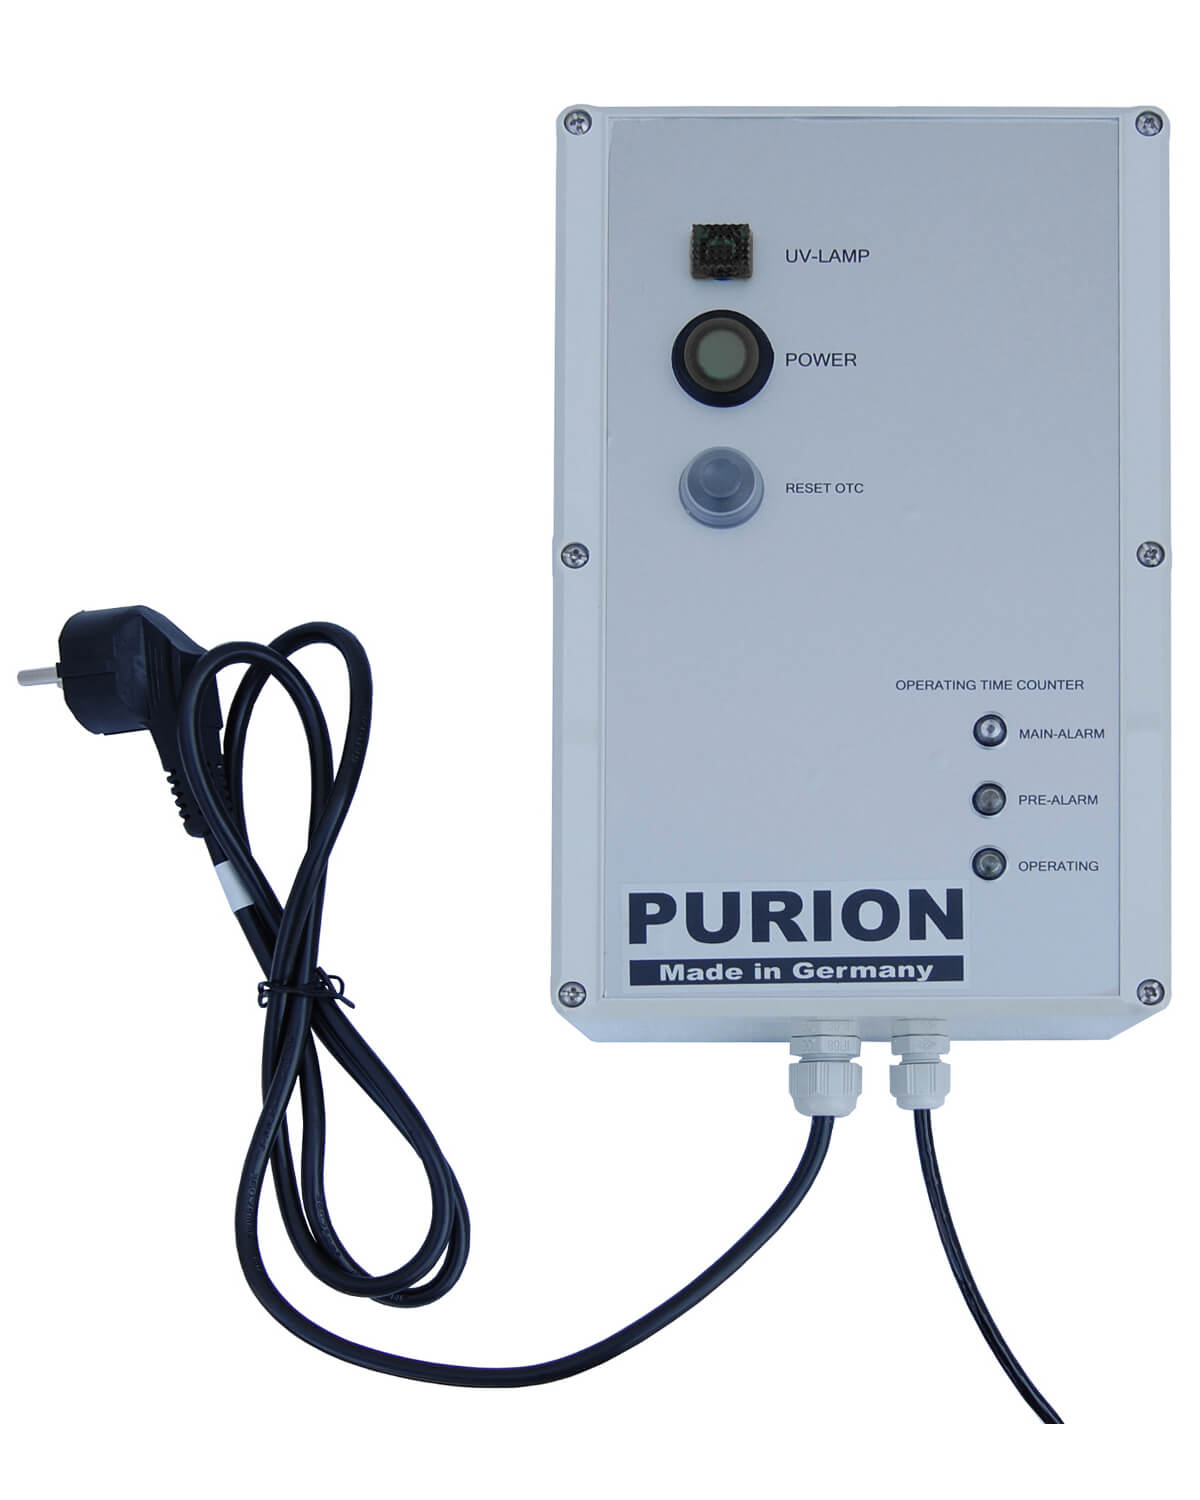 Das PURION 2500 90 W OTC Bundle der PURION GmbH ist ein Reinigungssystem, das UV-C-Desinfektion nutzt, um sauberes und hochwertiges Trinkwasser bereitzustellen. Mit seinem wartungsarmen Design sorgt das PURION 2500 90 W OTC Bundle für effizientes und effizientes Arbeiten